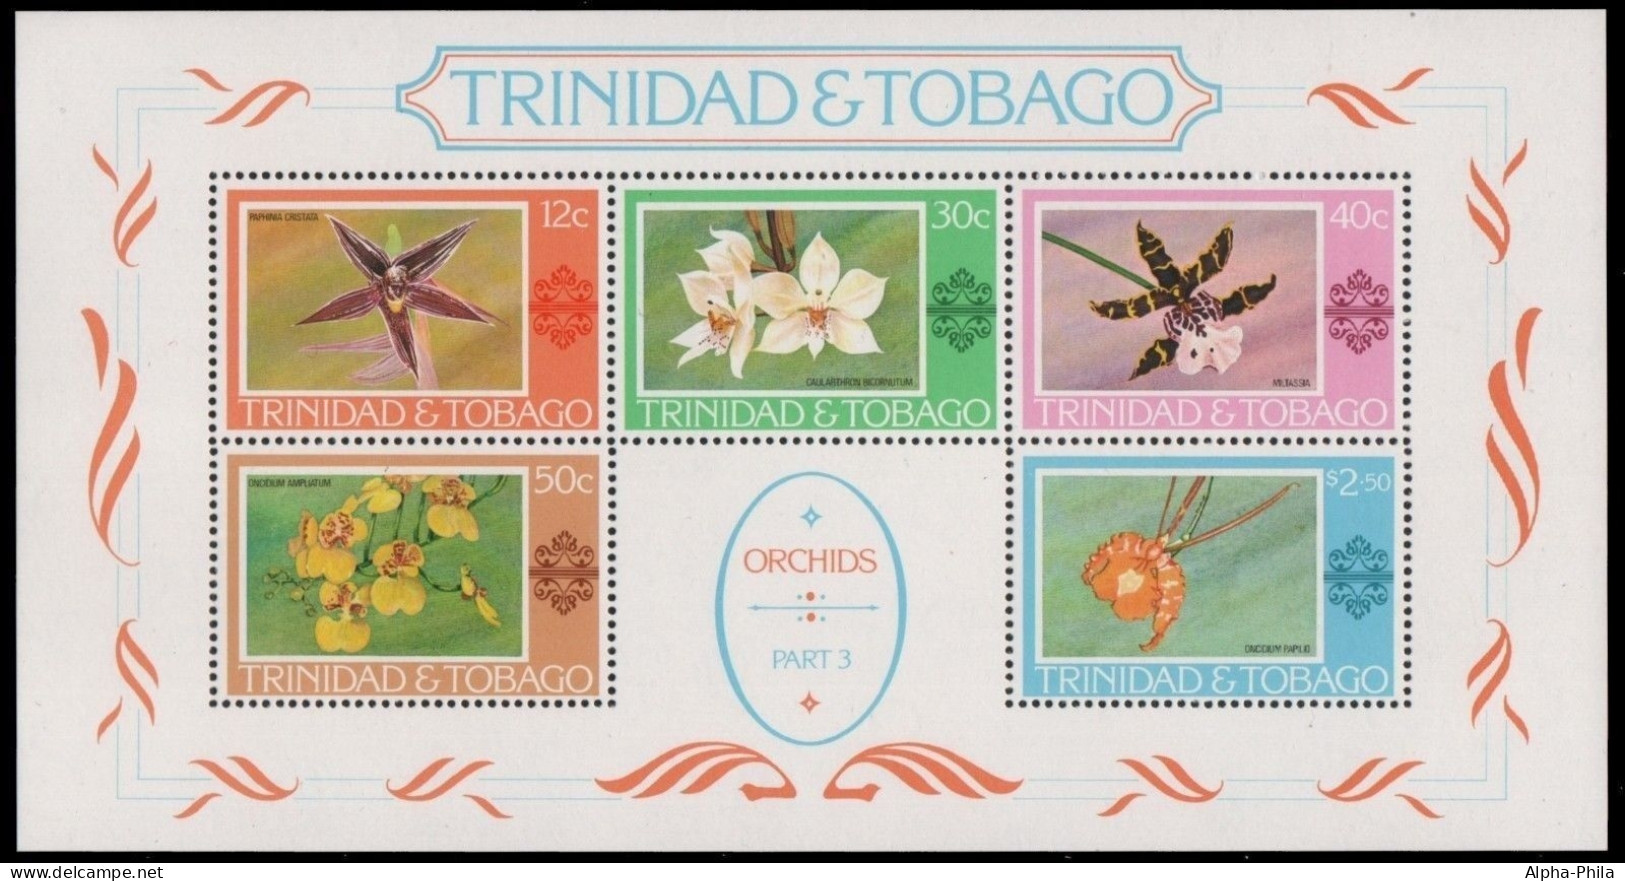 Trinidad & Tobago 1978 - Mi-Nr. Block 23 ** - MNH - Orchideen / Orchids - Trinidad & Tobago (1962-...)